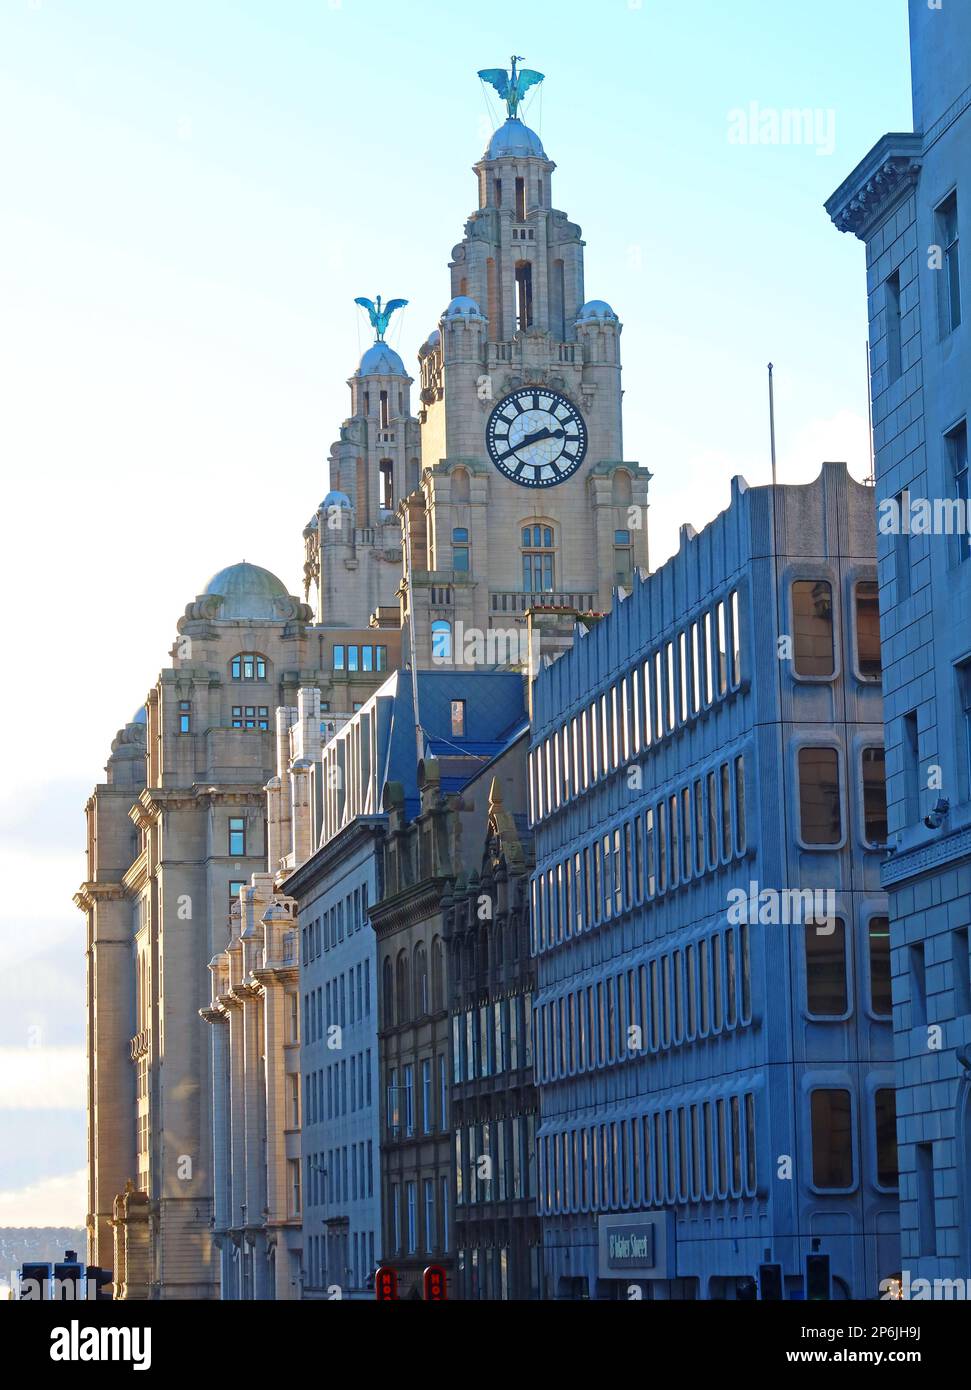 Die klassische und moderne Architektur von Liverpool steht im Kontrast. Blick nach Westen auf die Dale Street, Royal Liver Building 1911 und 1970er Bürofrontages Stockfoto